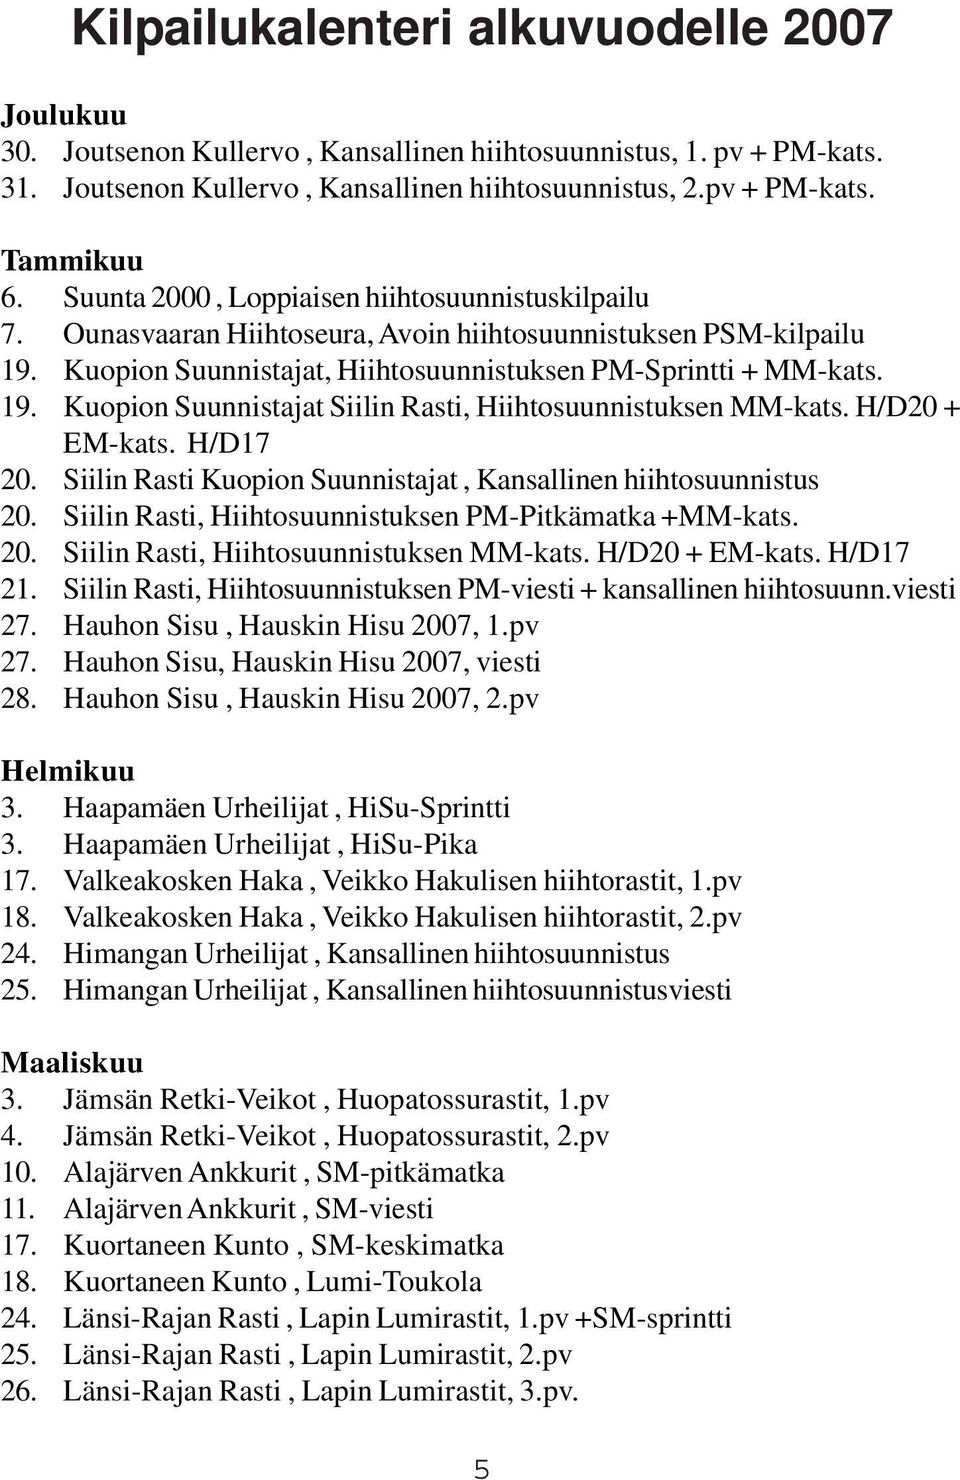 H/D20 + EM-kats. H/D17 20. Siilin Rasti Kuopion Suunnistajat, Kansallinen hiihtosuunnistus 20. Siilin Rasti, Hiihtosuunnistuksen PM-Pitkämatka +MM-kats. 20. Siilin Rasti, Hiihtosuunnistuksen MM-kats.